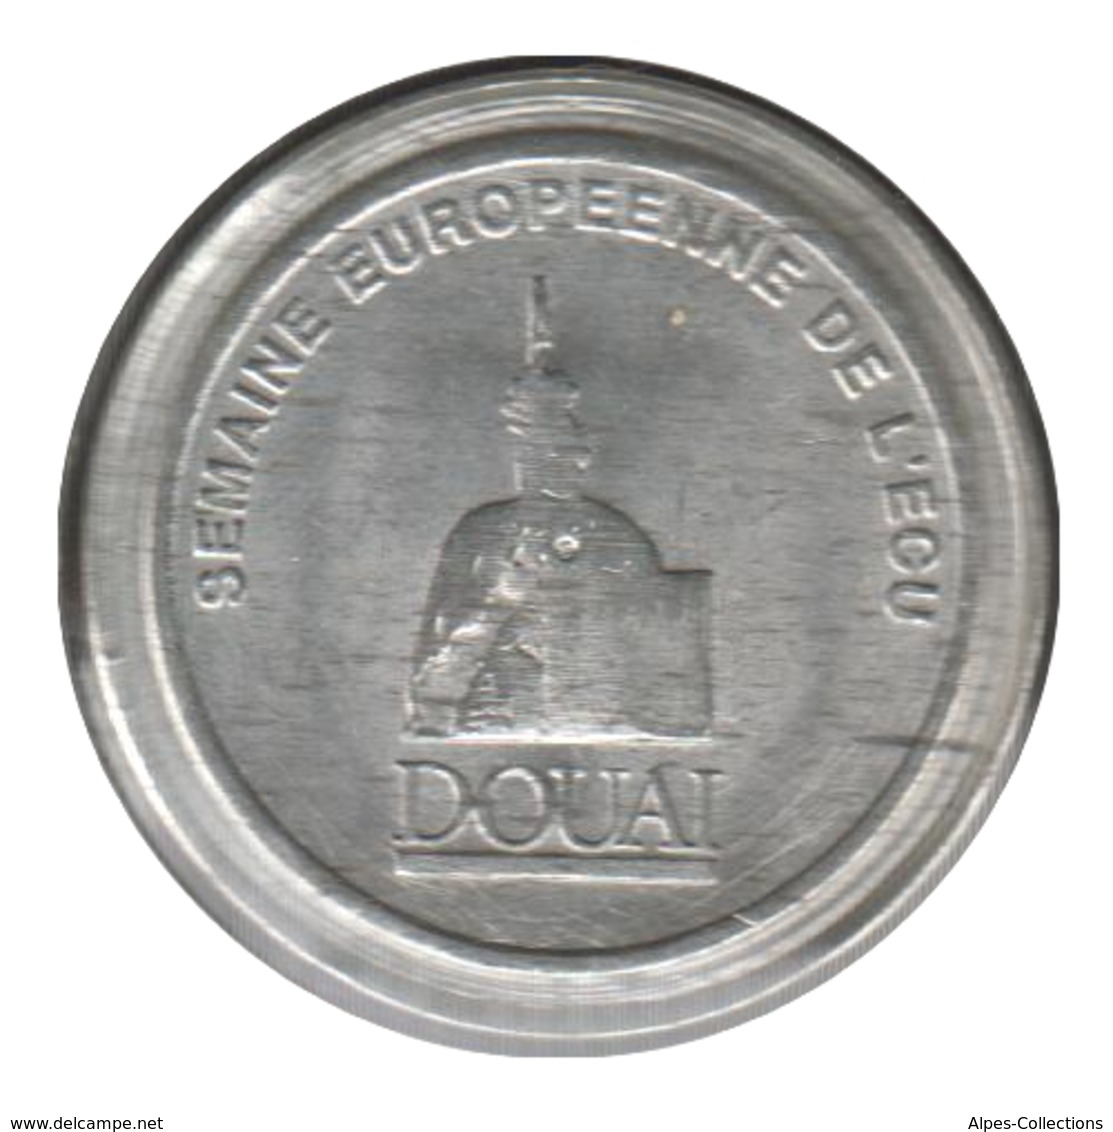 DOUAI - EC0010.8 - 1 ECU DES VILLES - Réf: NR - 1991 - Euros Des Villes